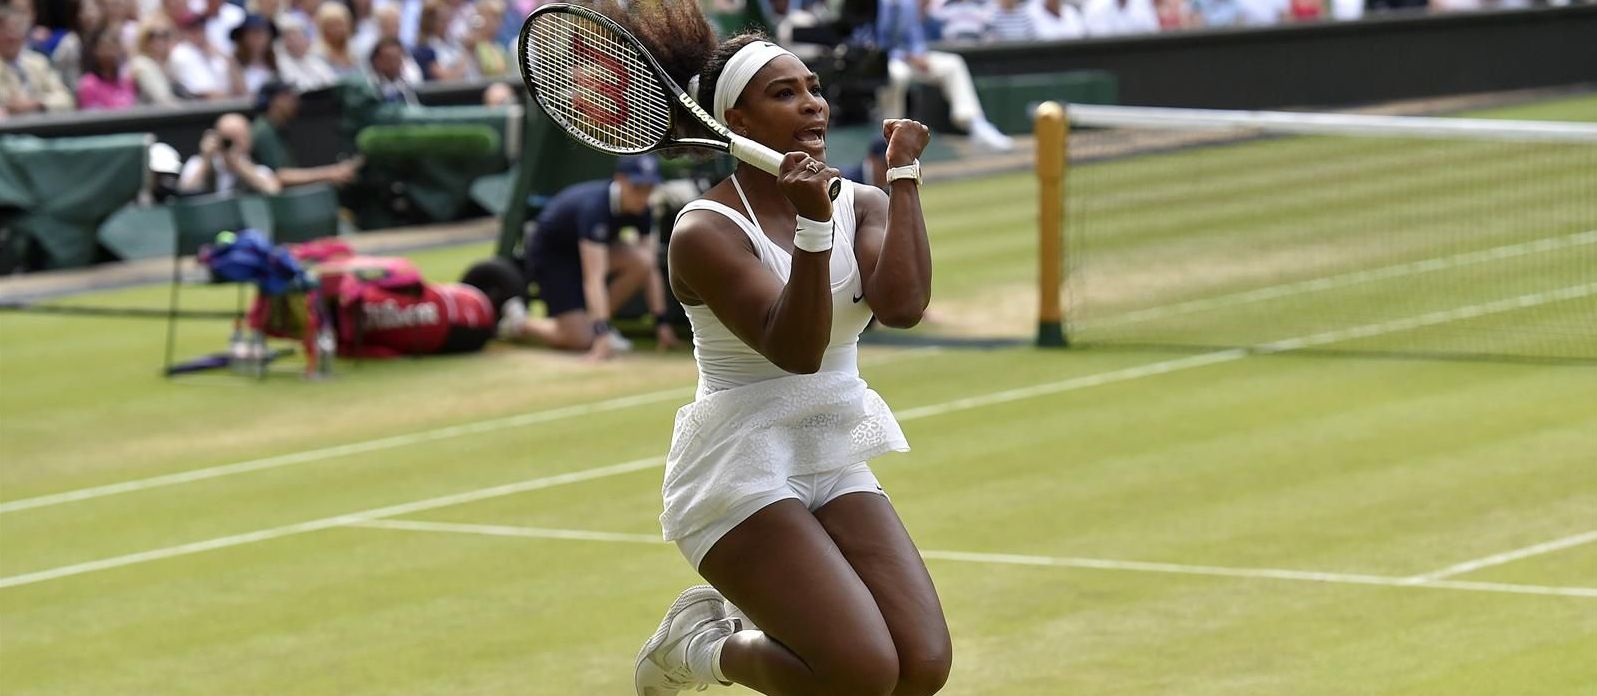 Serena Williams'ı Azarenka da durduramadı!